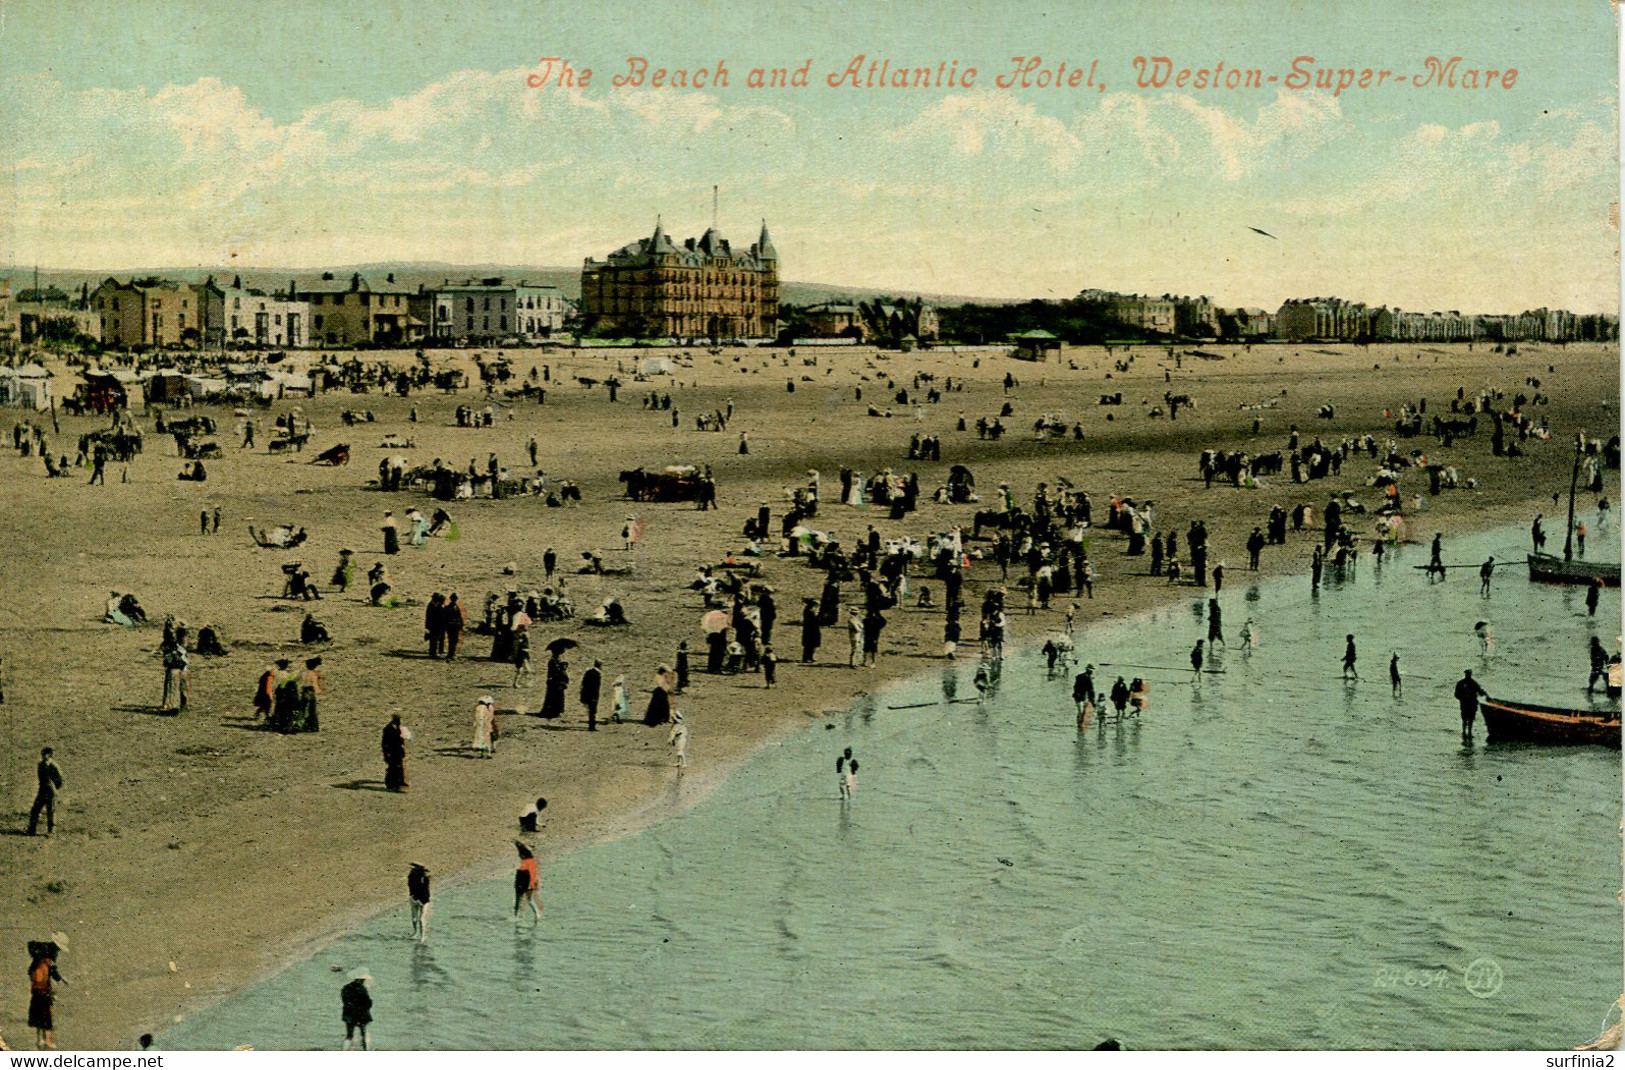 AVON - WESTON SUPER MARE - THE BEACH AND ATLANTIC HOTEL Av629 - Weston-Super-Mare